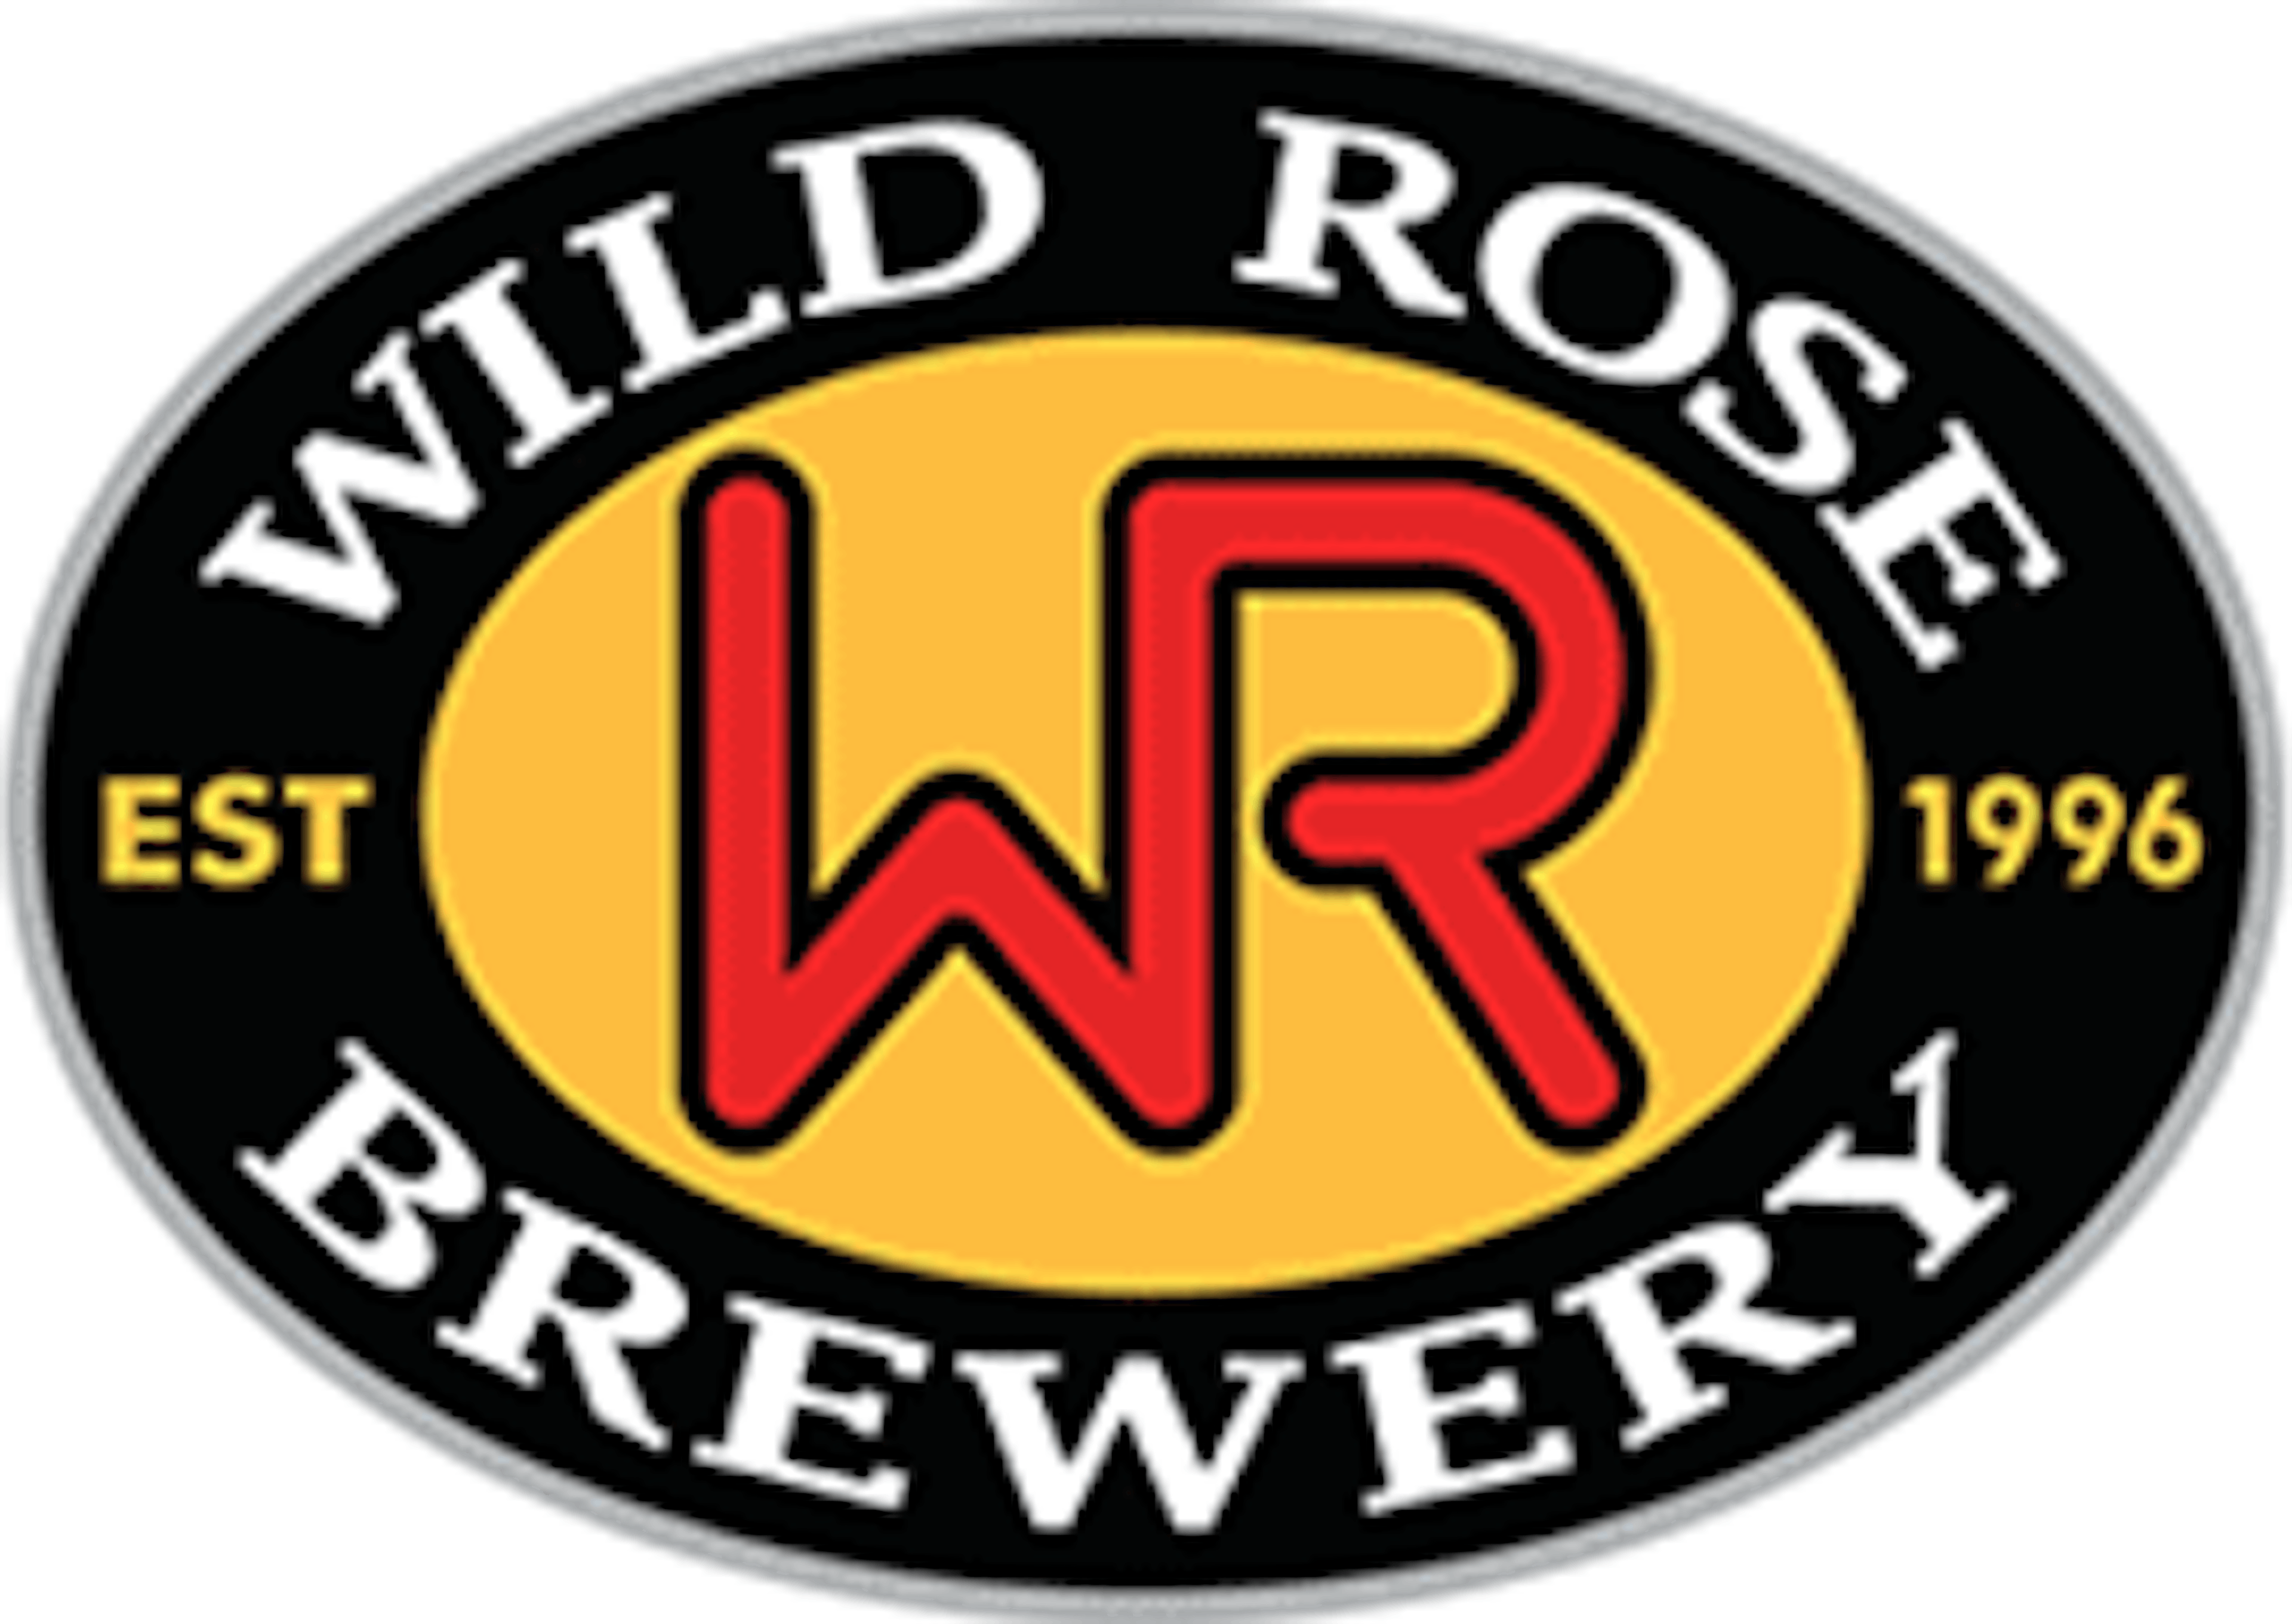 wild rose brewery logo